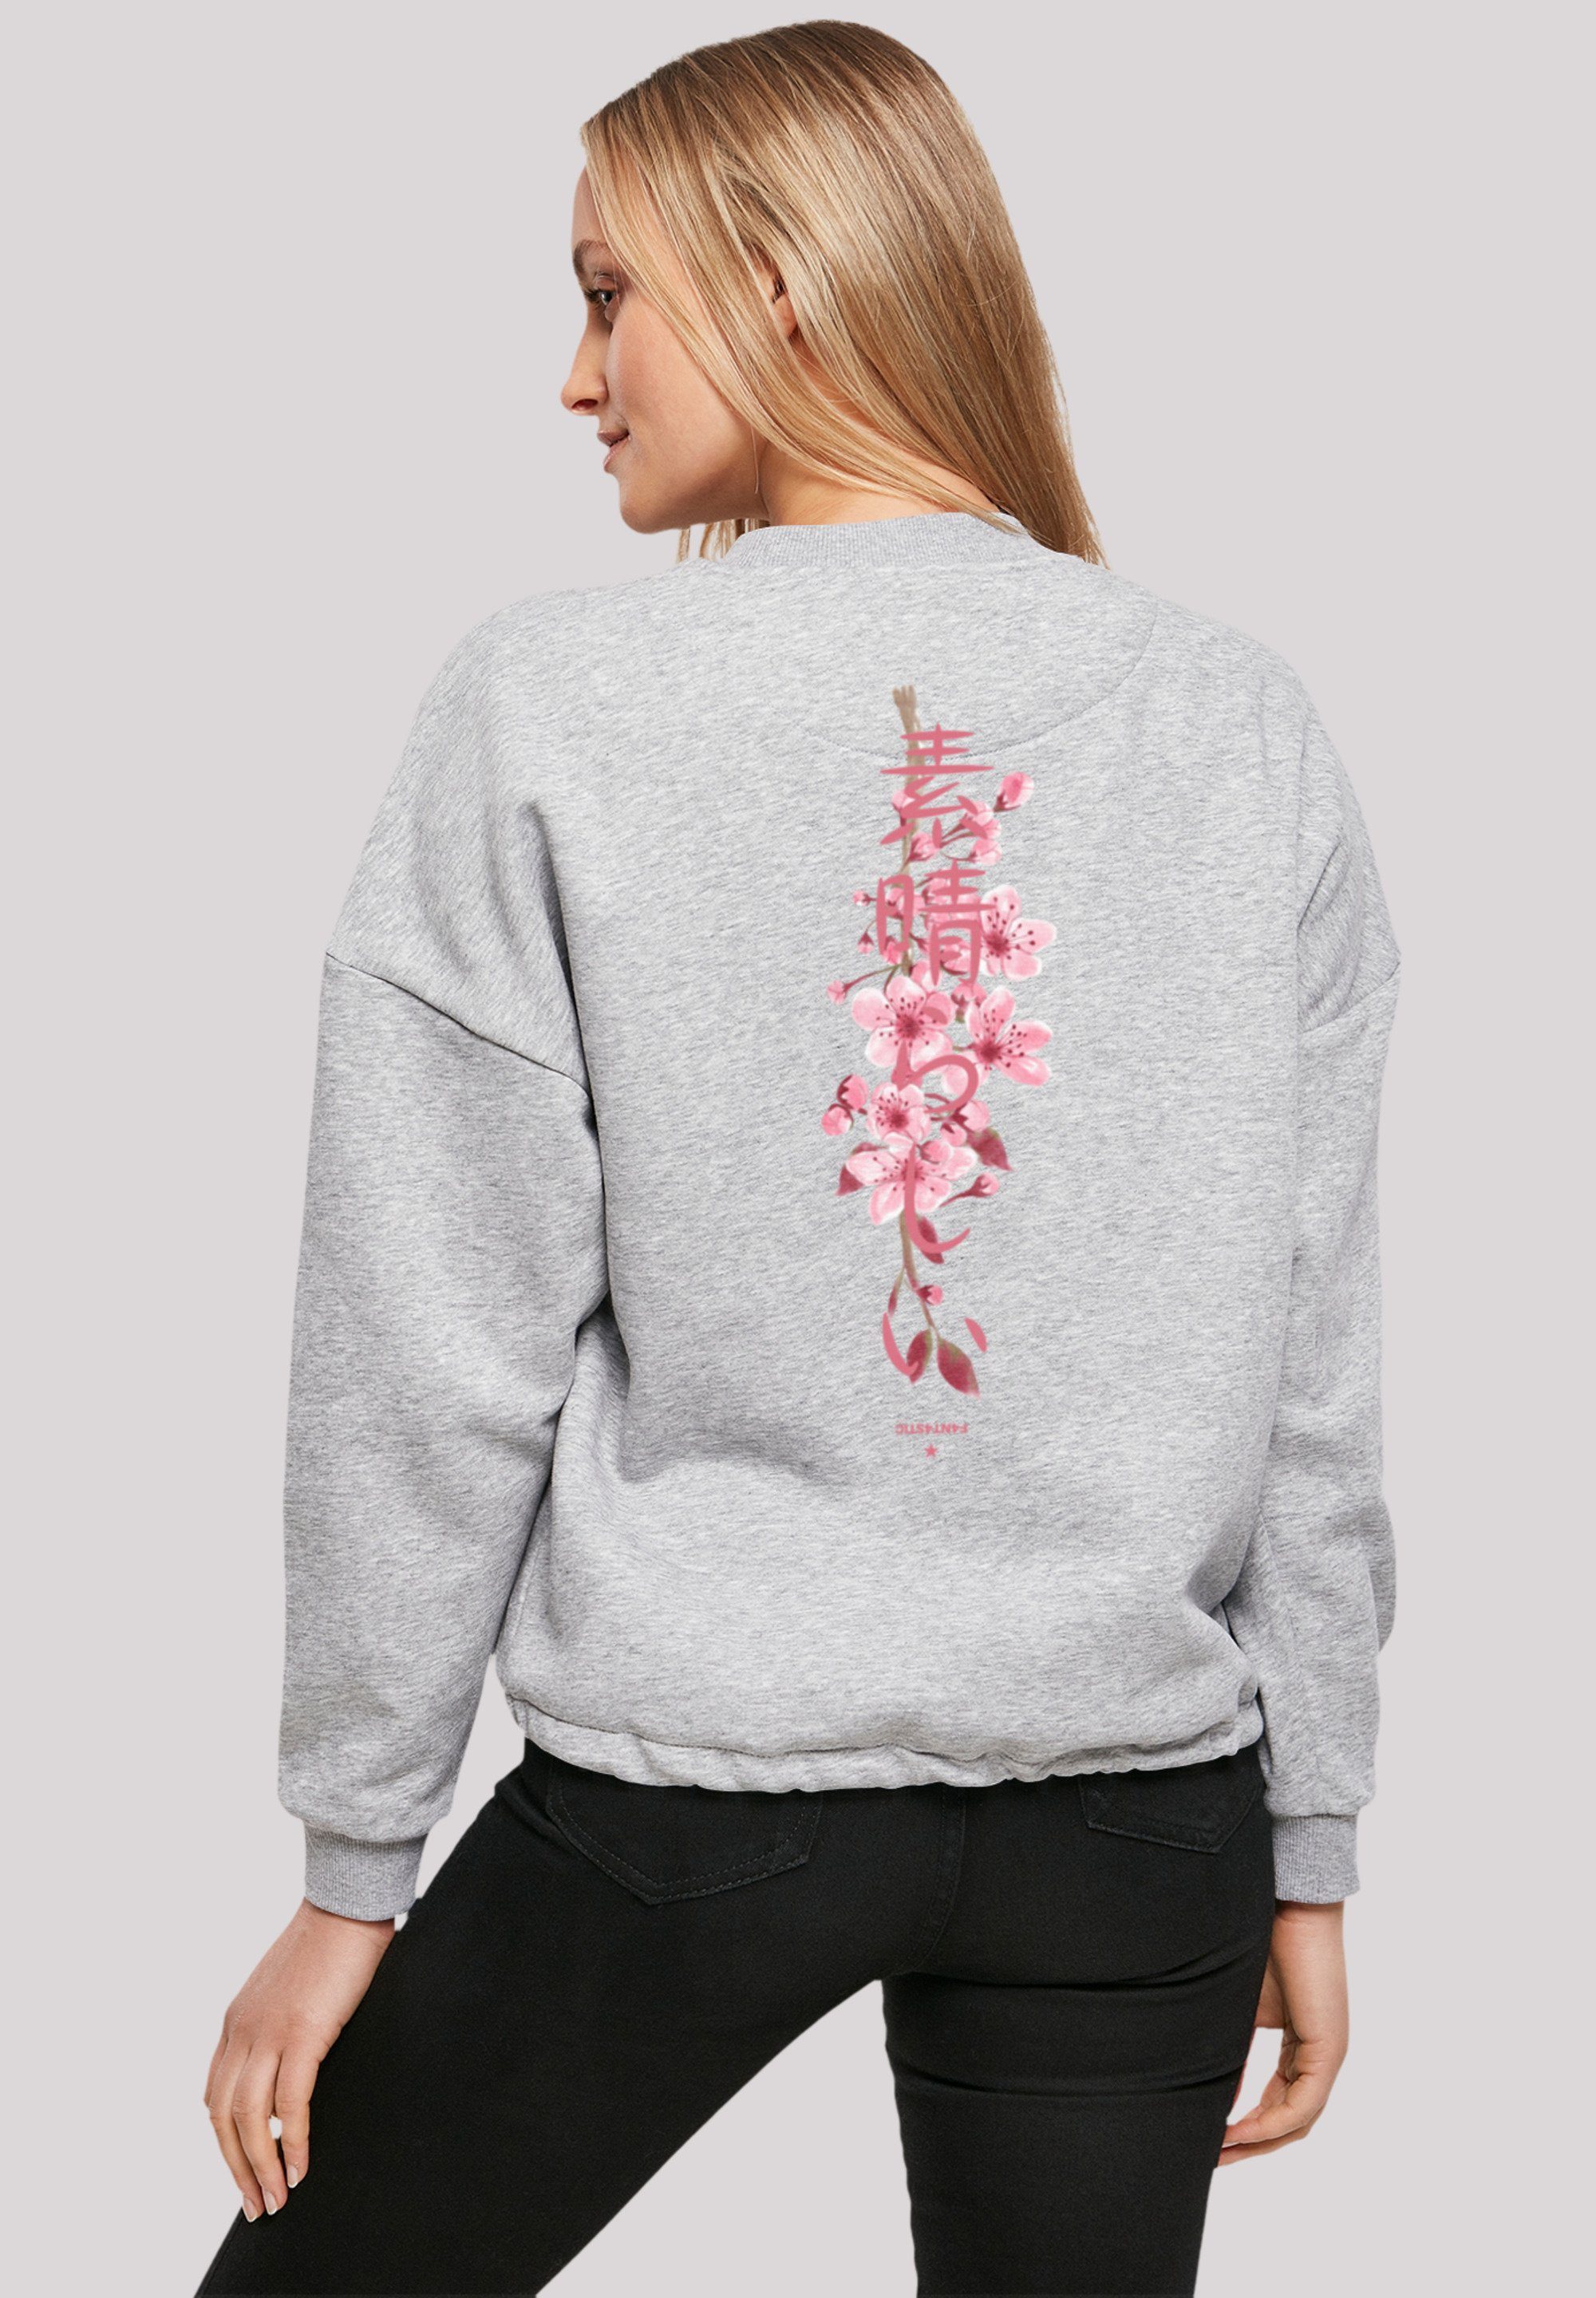 F4NT4STIC Sweatshirt Kirschblüte Japan Print | Hoodies